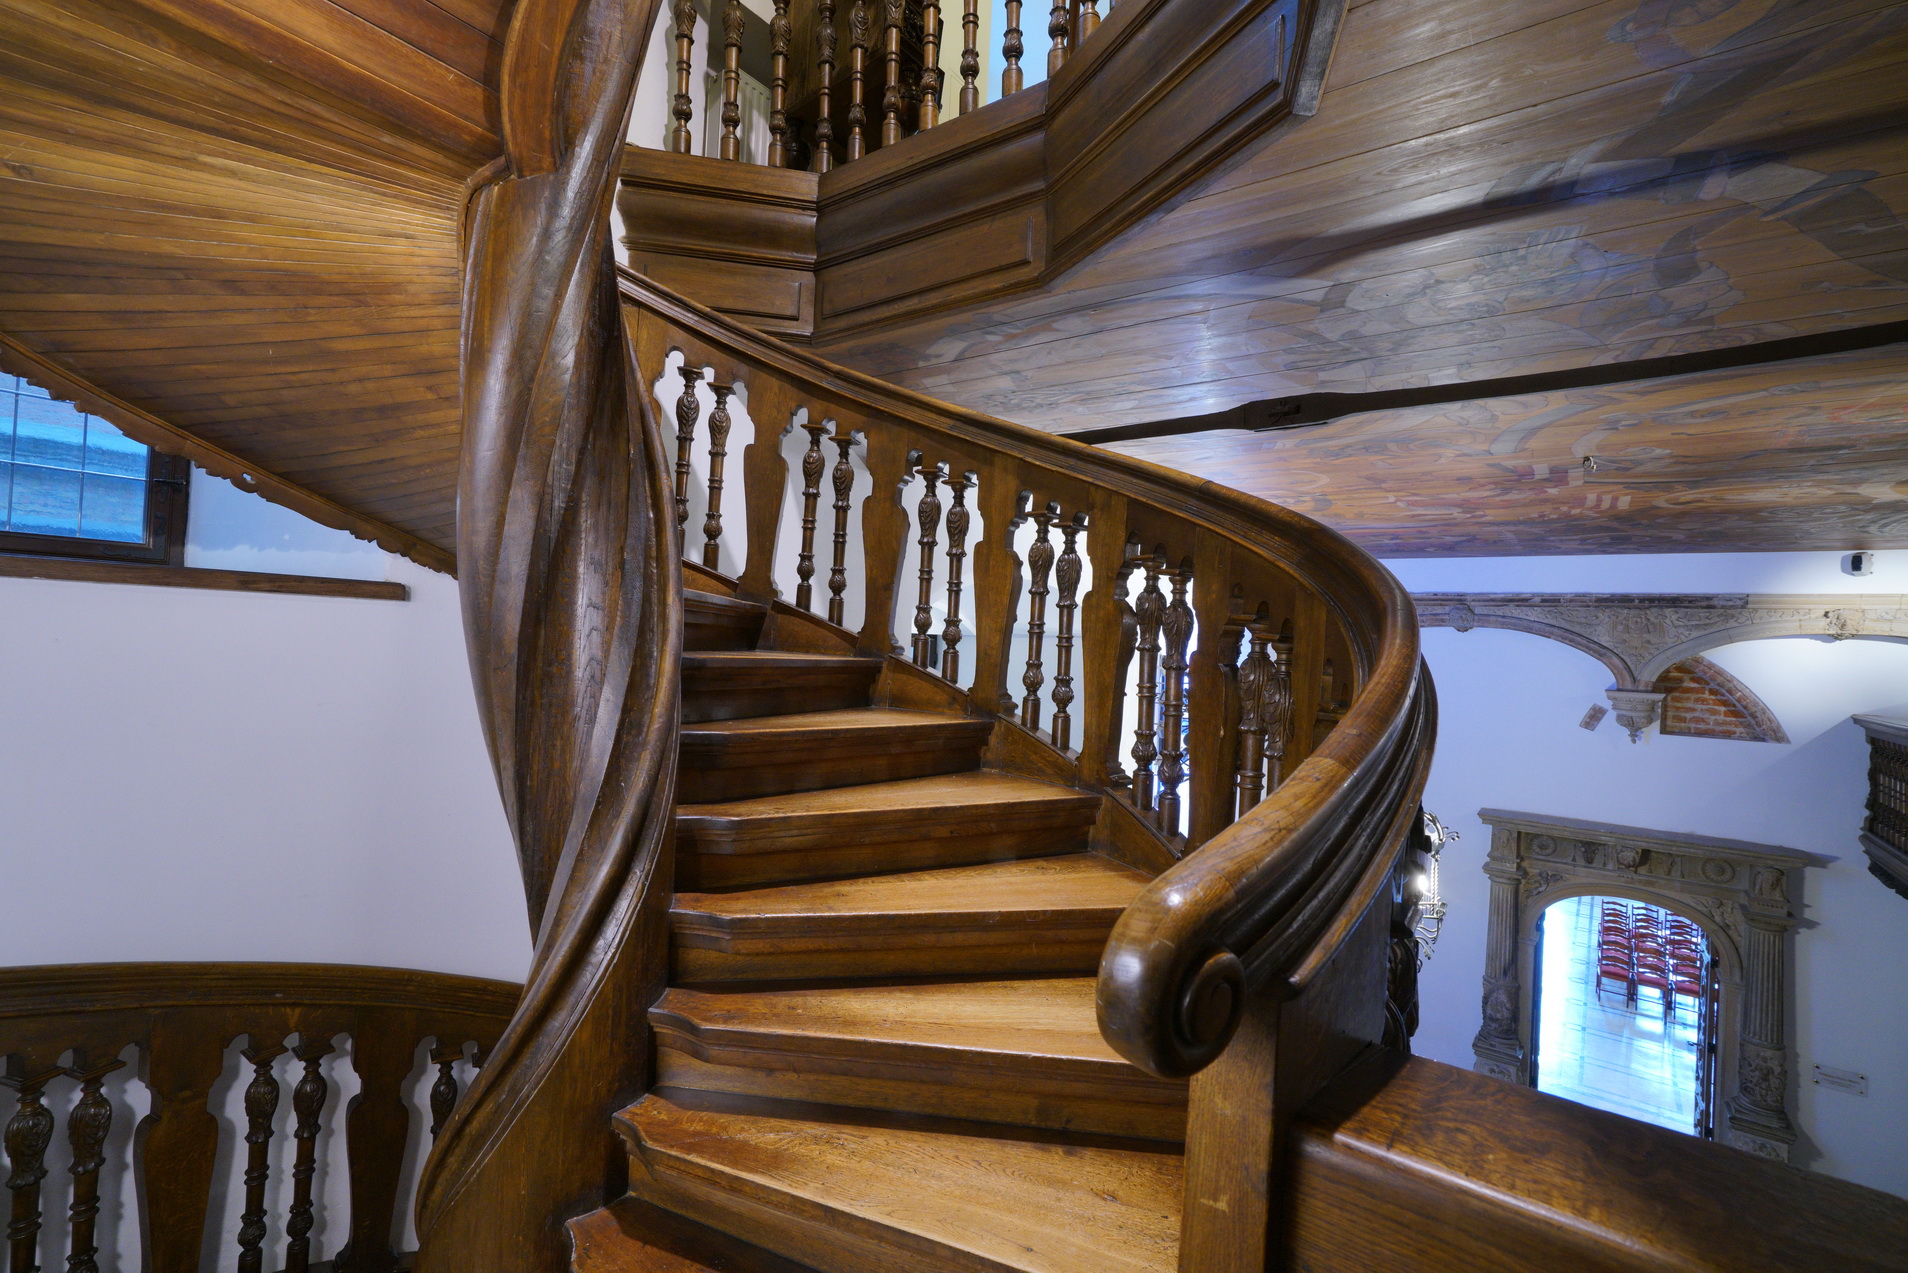 Drewniane, kręcone schody w Sieni Dolnej Ratusza.